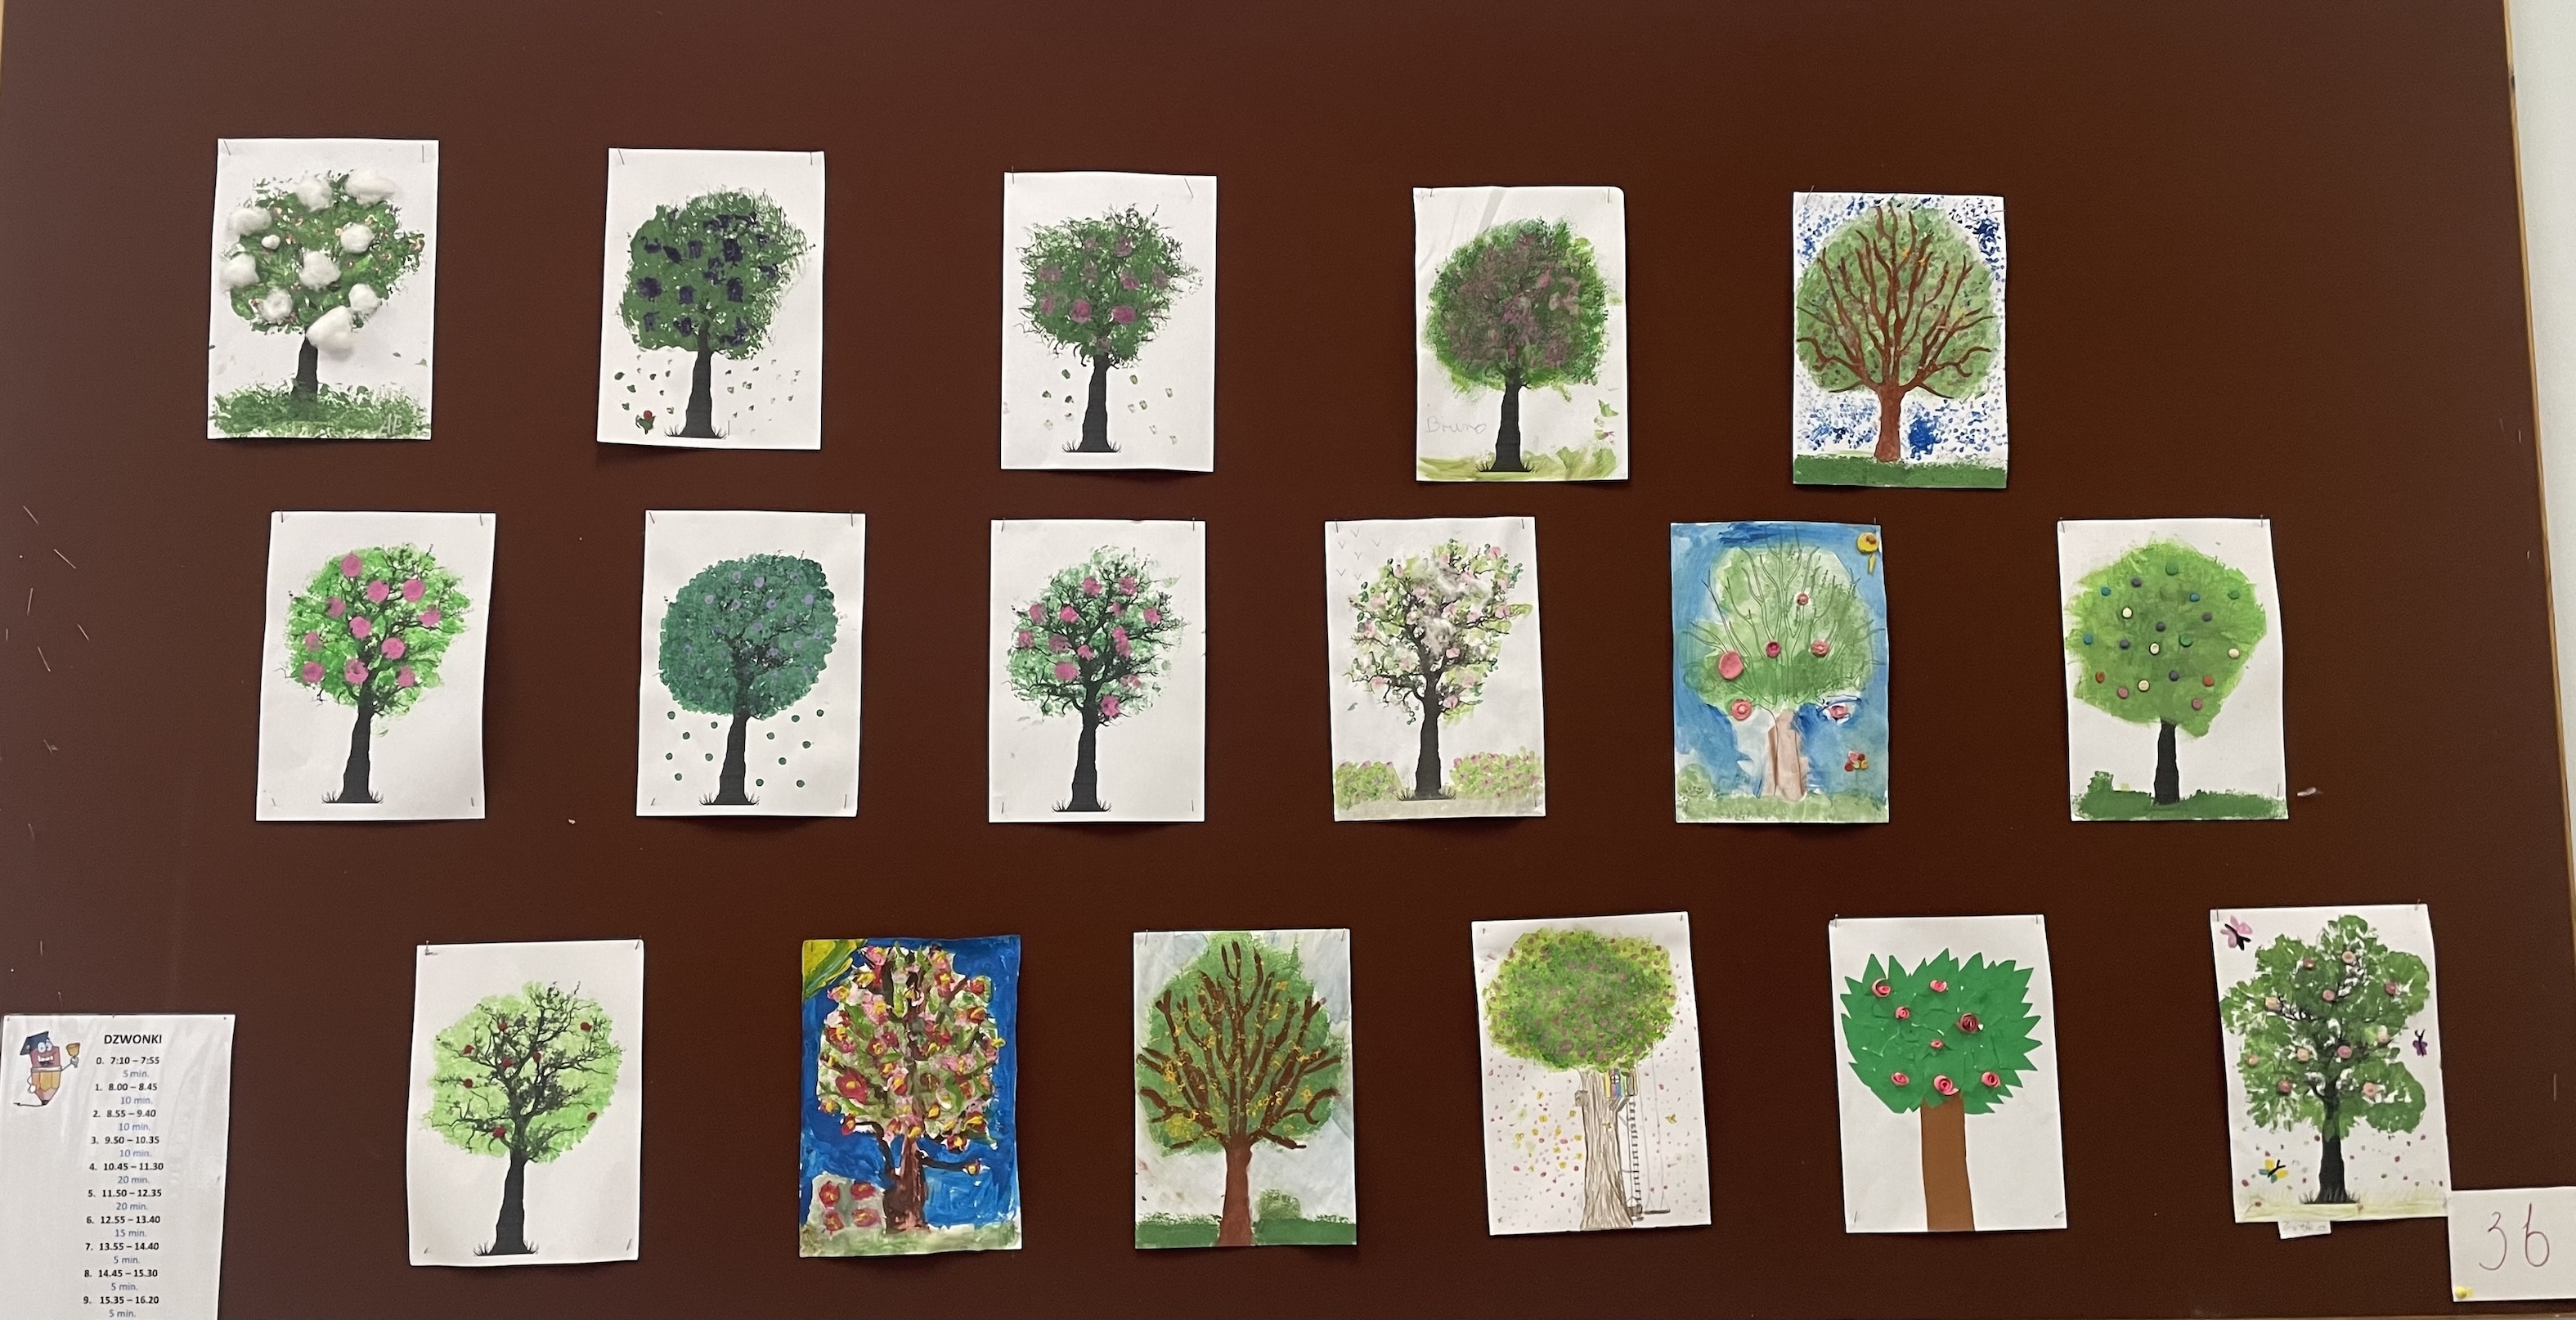 Tablica ścienna przedstawiająca prace uczniów z wiosennymi drzewami.